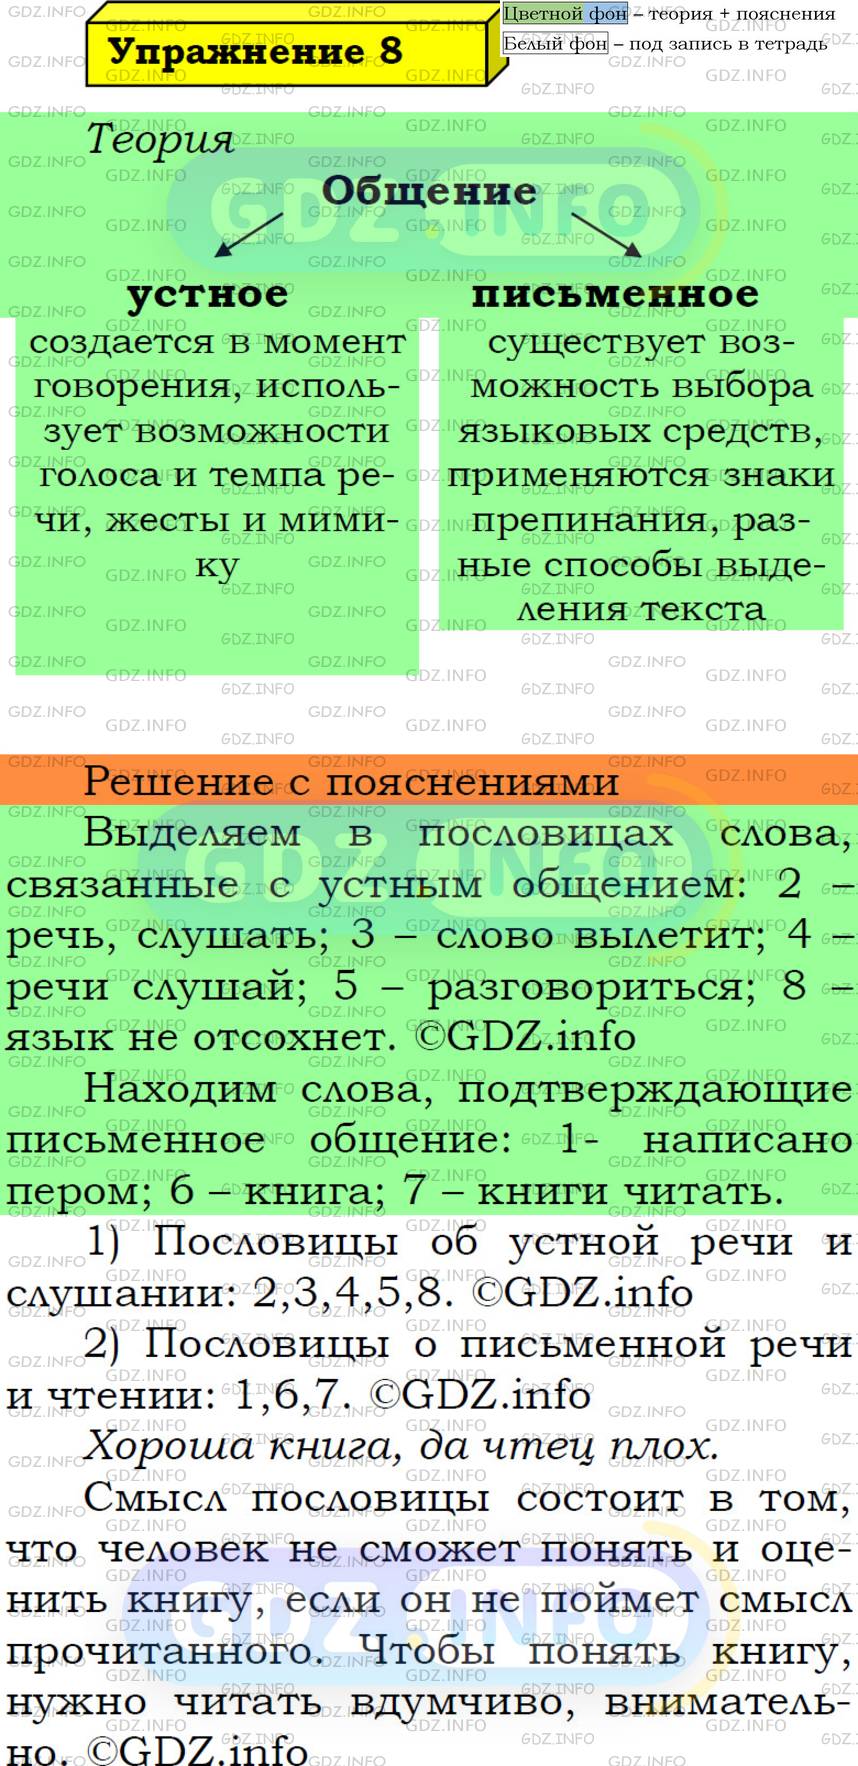 Фото решения 6: Номер №8 из ГДЗ по Русскому языку 5 класс: Ладыженская Т.А. 2019г.